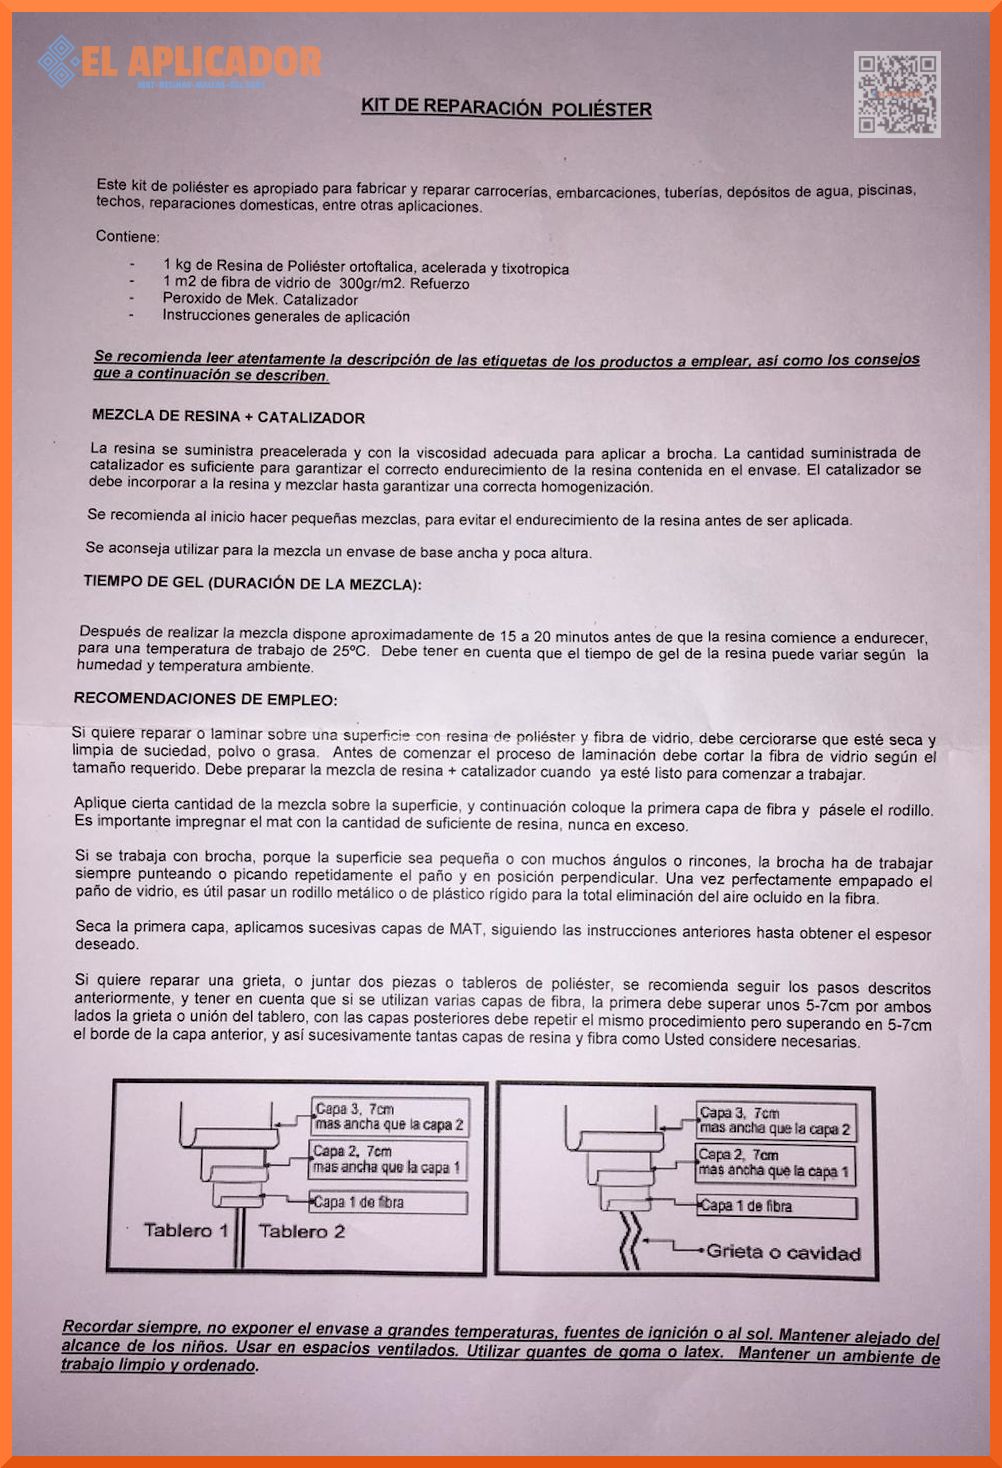 CARBONATO DE CALCIO, OMY-10 – Resinas Poliéster y Gelcoat S.A. de C.V.